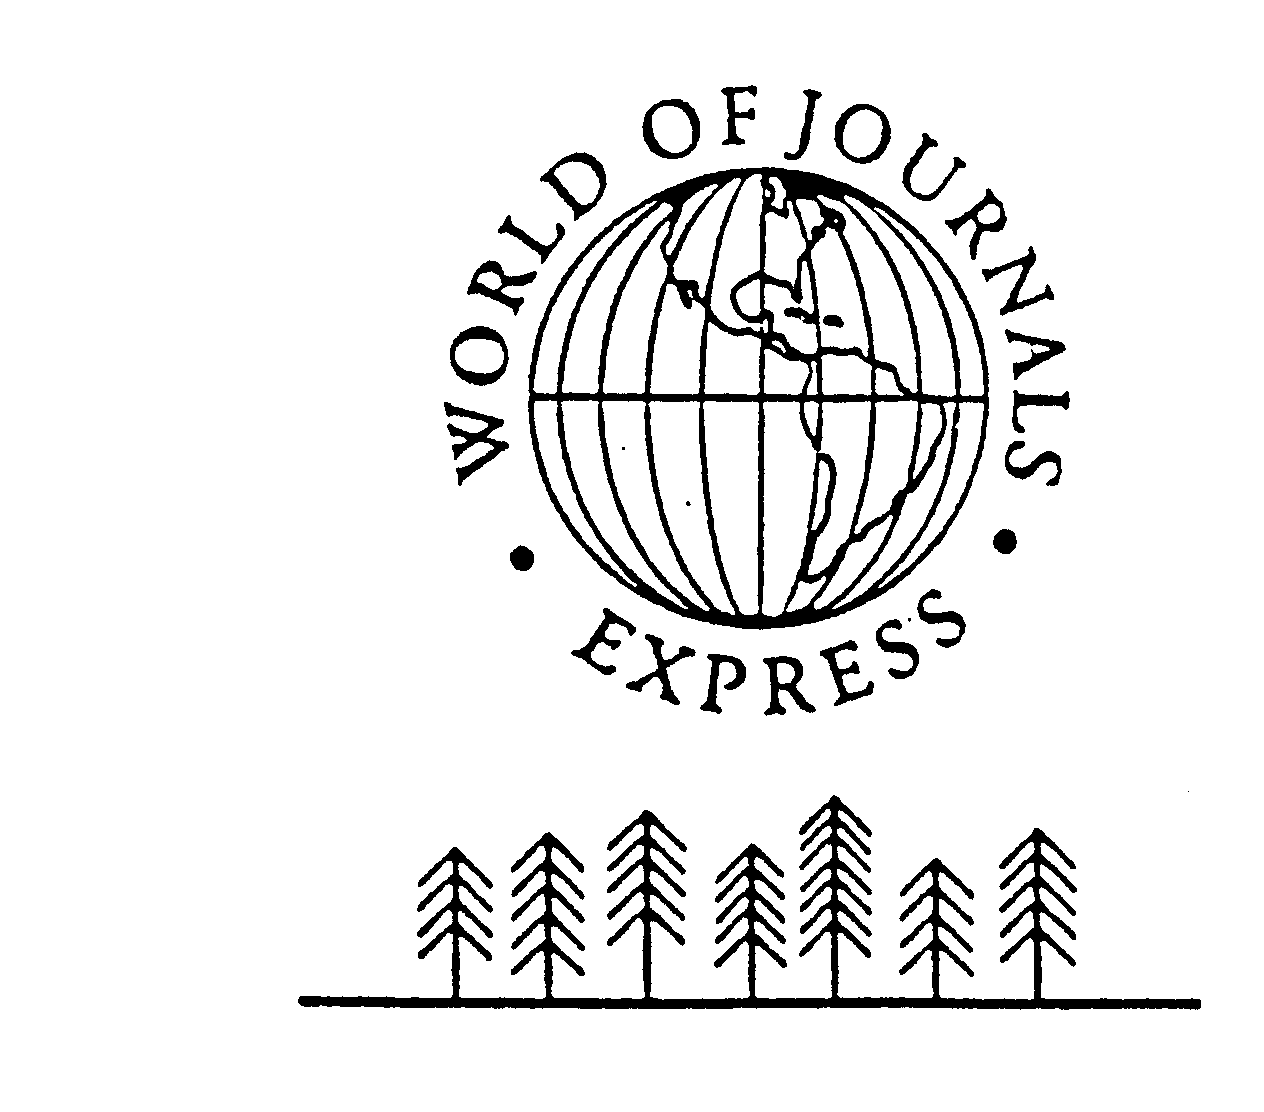  WORLD OF JOURNALS EXPRESS